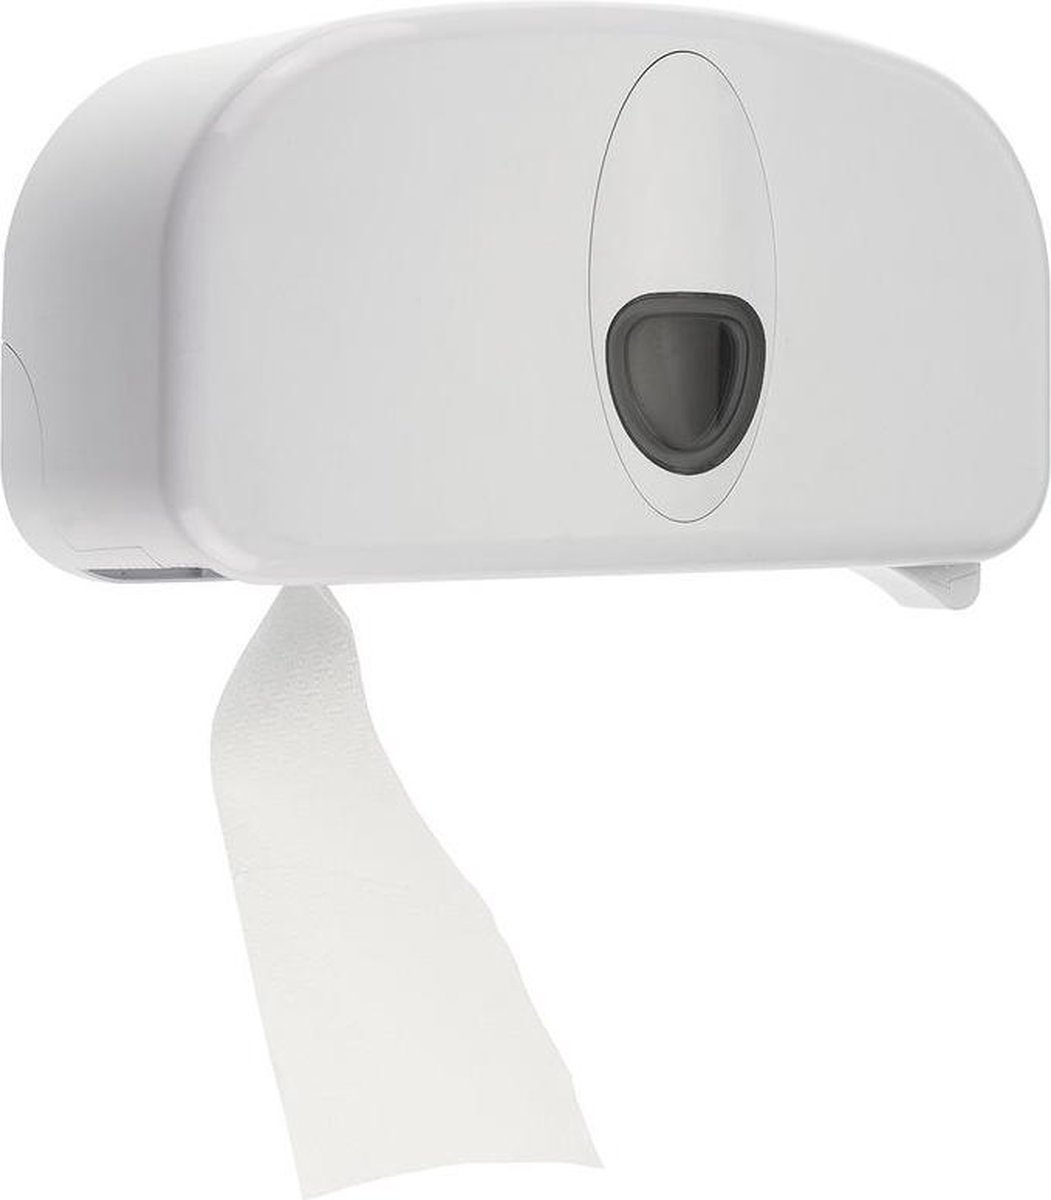 PlastiQline 2020 toiletpapier dispenser gemaakt van plastic voor 2 standaard rolls